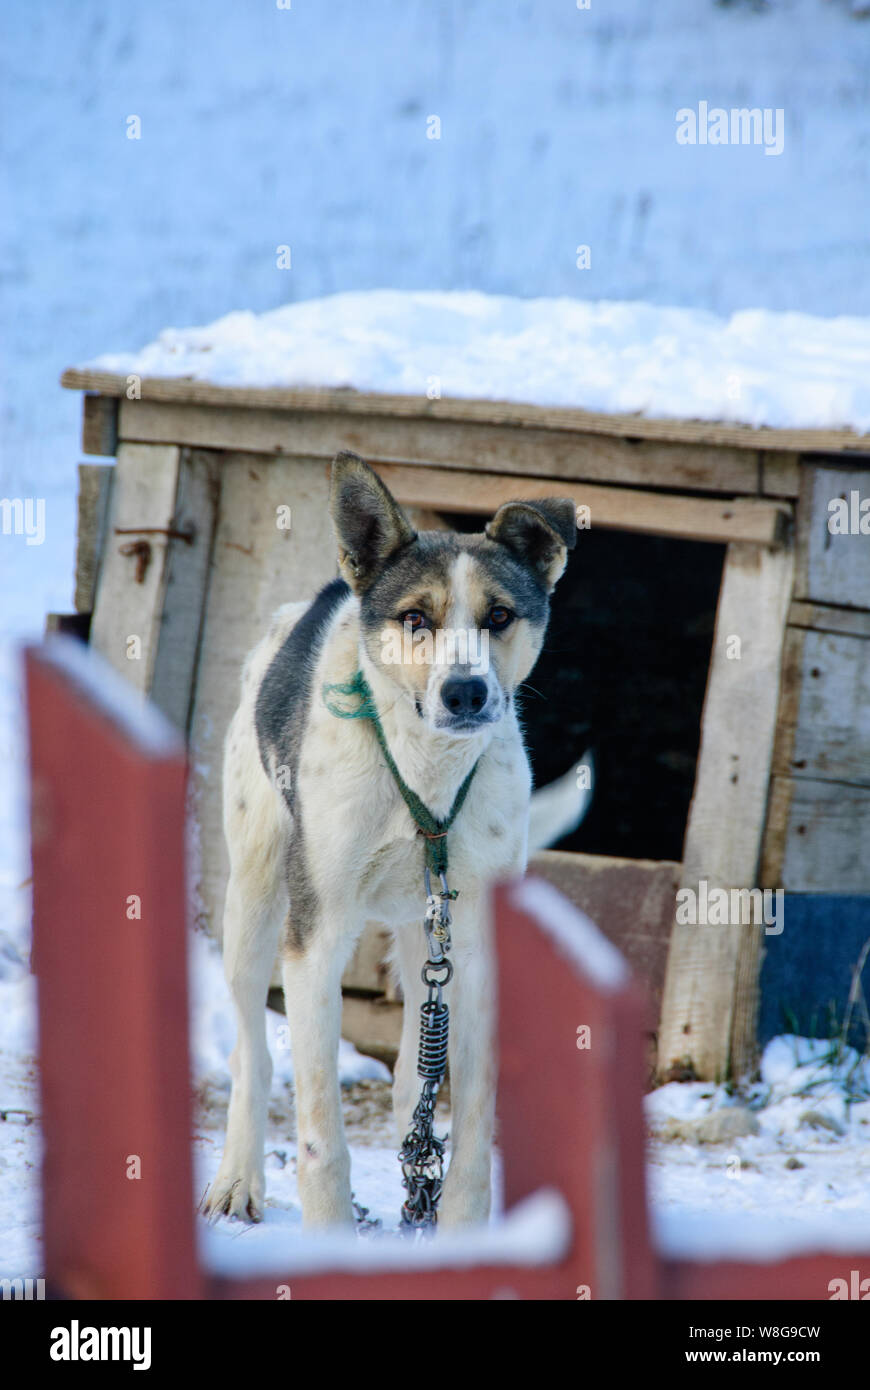 Lone cane nel mezzo di Borovetts Bulgaria sul nightwatch come un cucciolo a guardia delle persone nelle vicinanze da orsi e altre cose di questo genere. Foto Stock